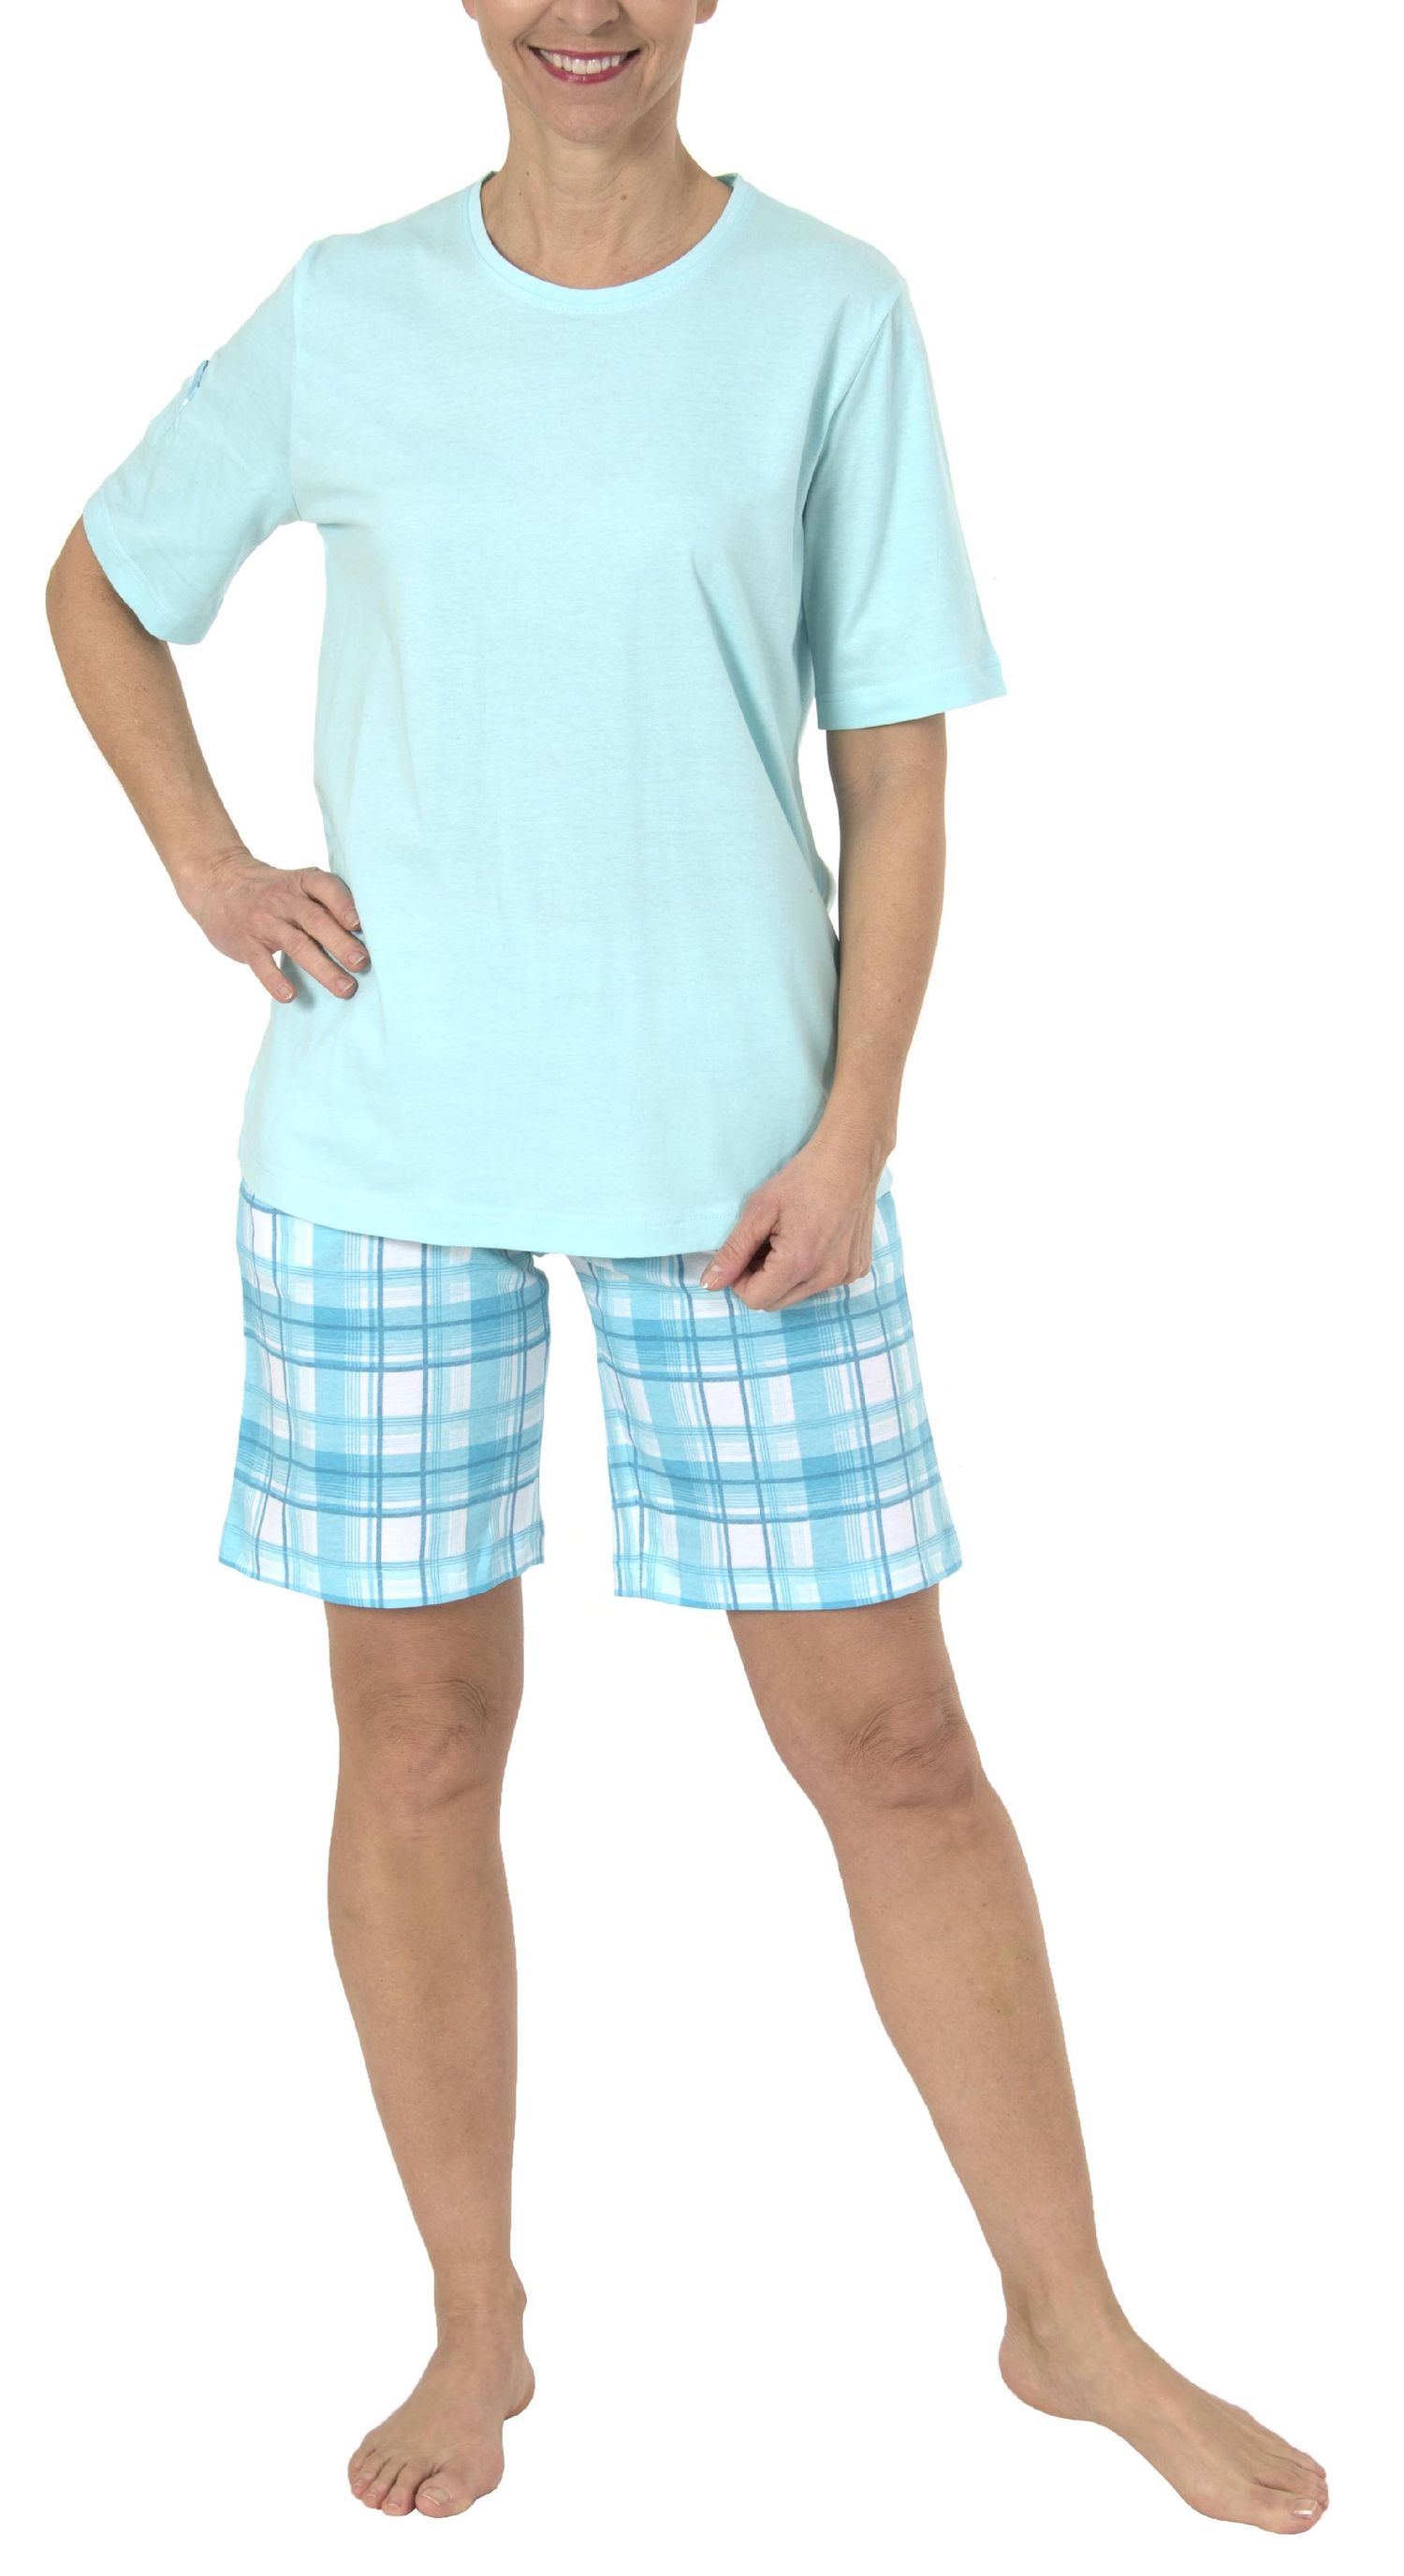 Damen Shorty Pyjama kurzarm in sommerlichen Farben von Normann - 191 205 90 204